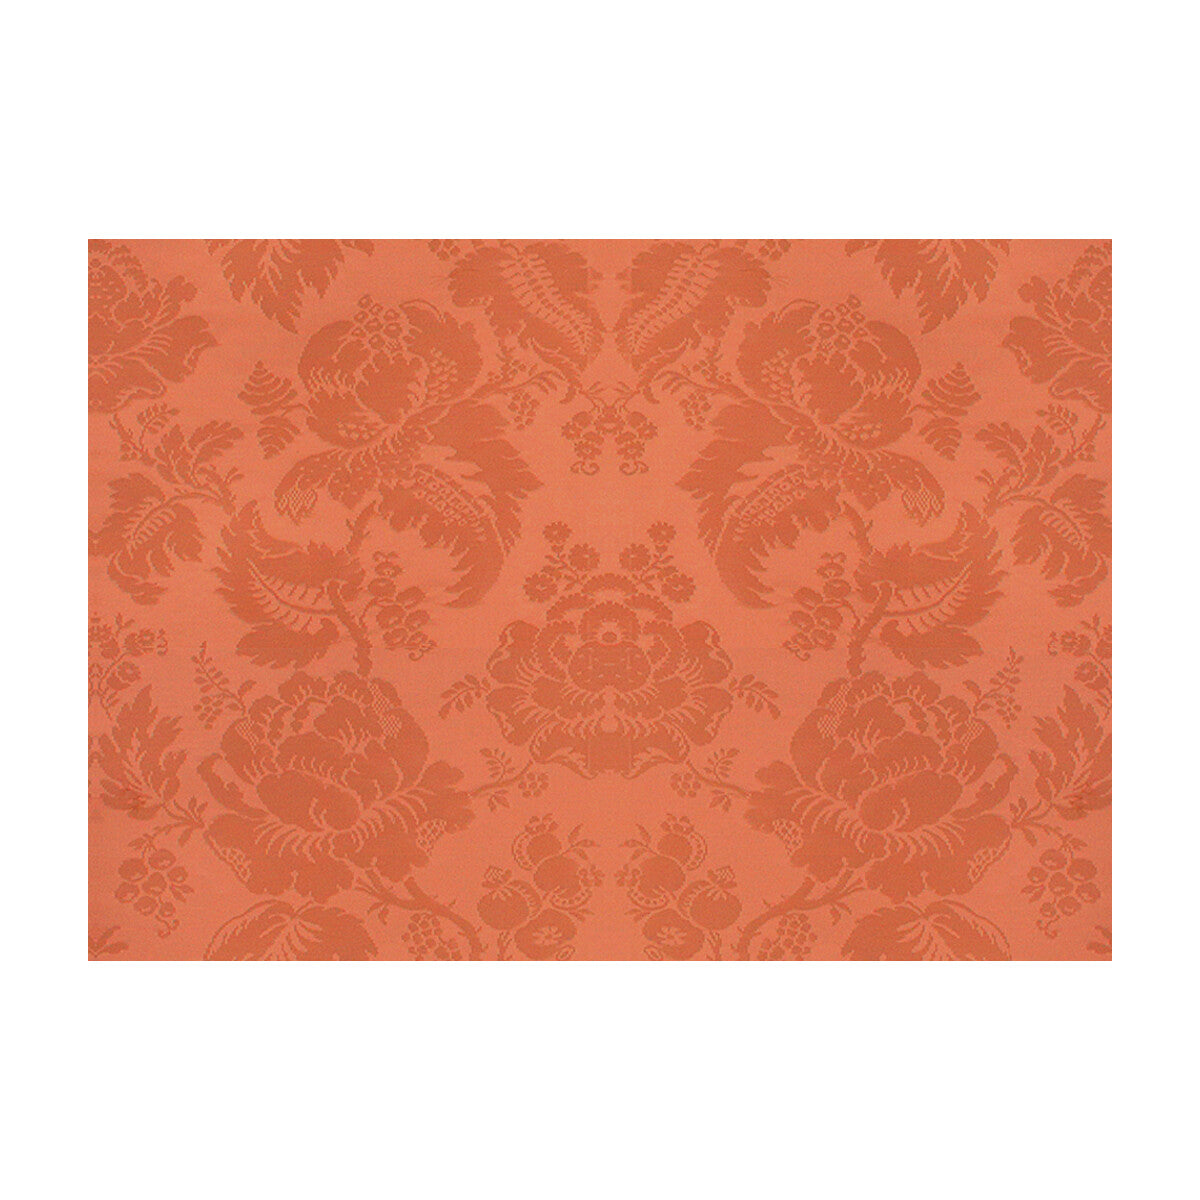 Moulins Damask fabric in vieux rose color - pattern BR-81035.LLQ.0 - by Brunschwig &amp; Fils